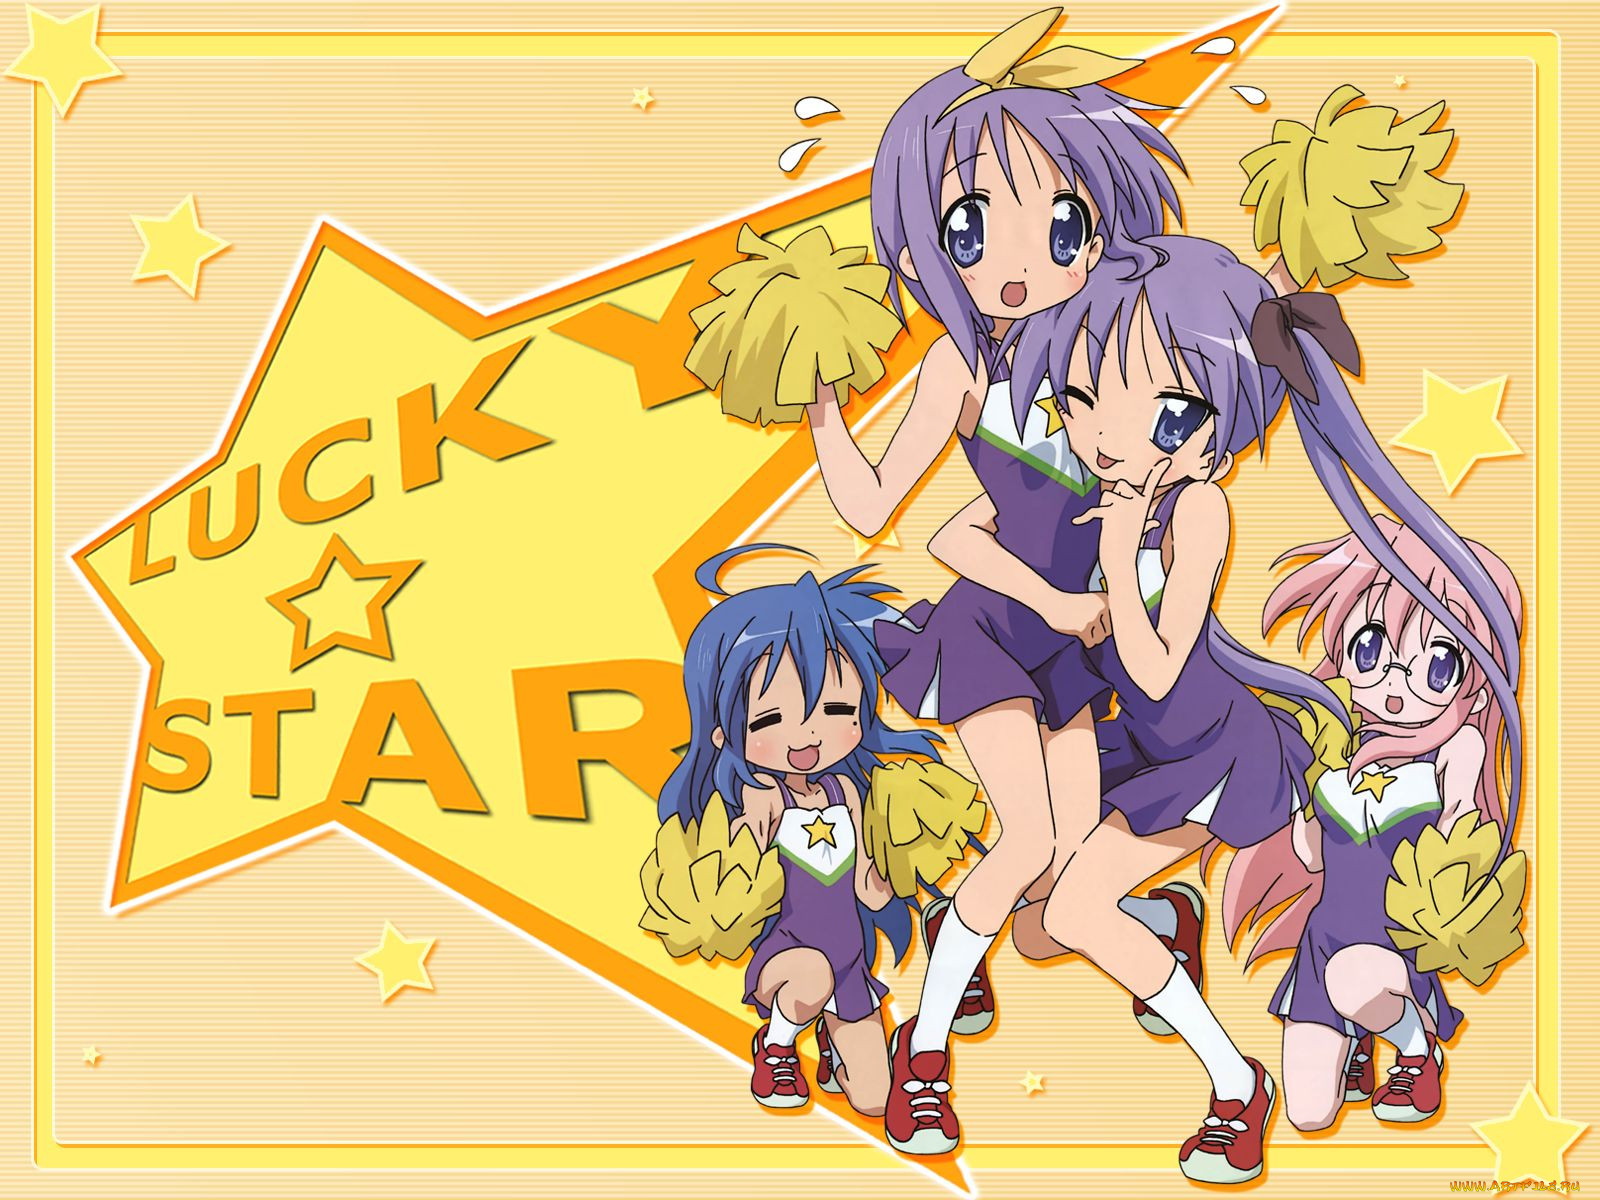 , lucky, star